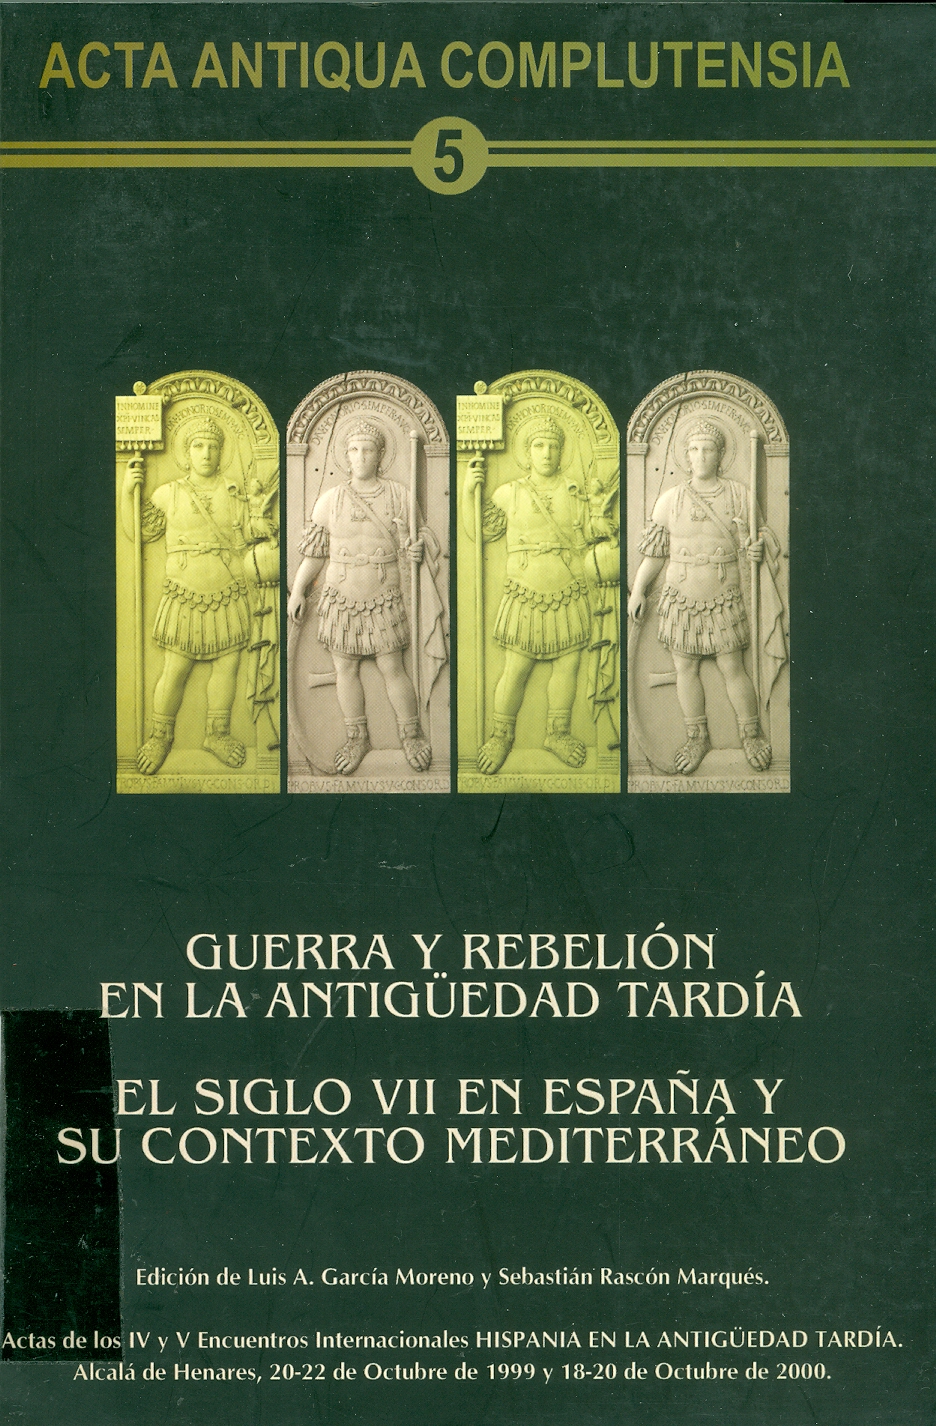 Imagen de portada del libro Guerra y rebelión en la Antigüedad Tardía